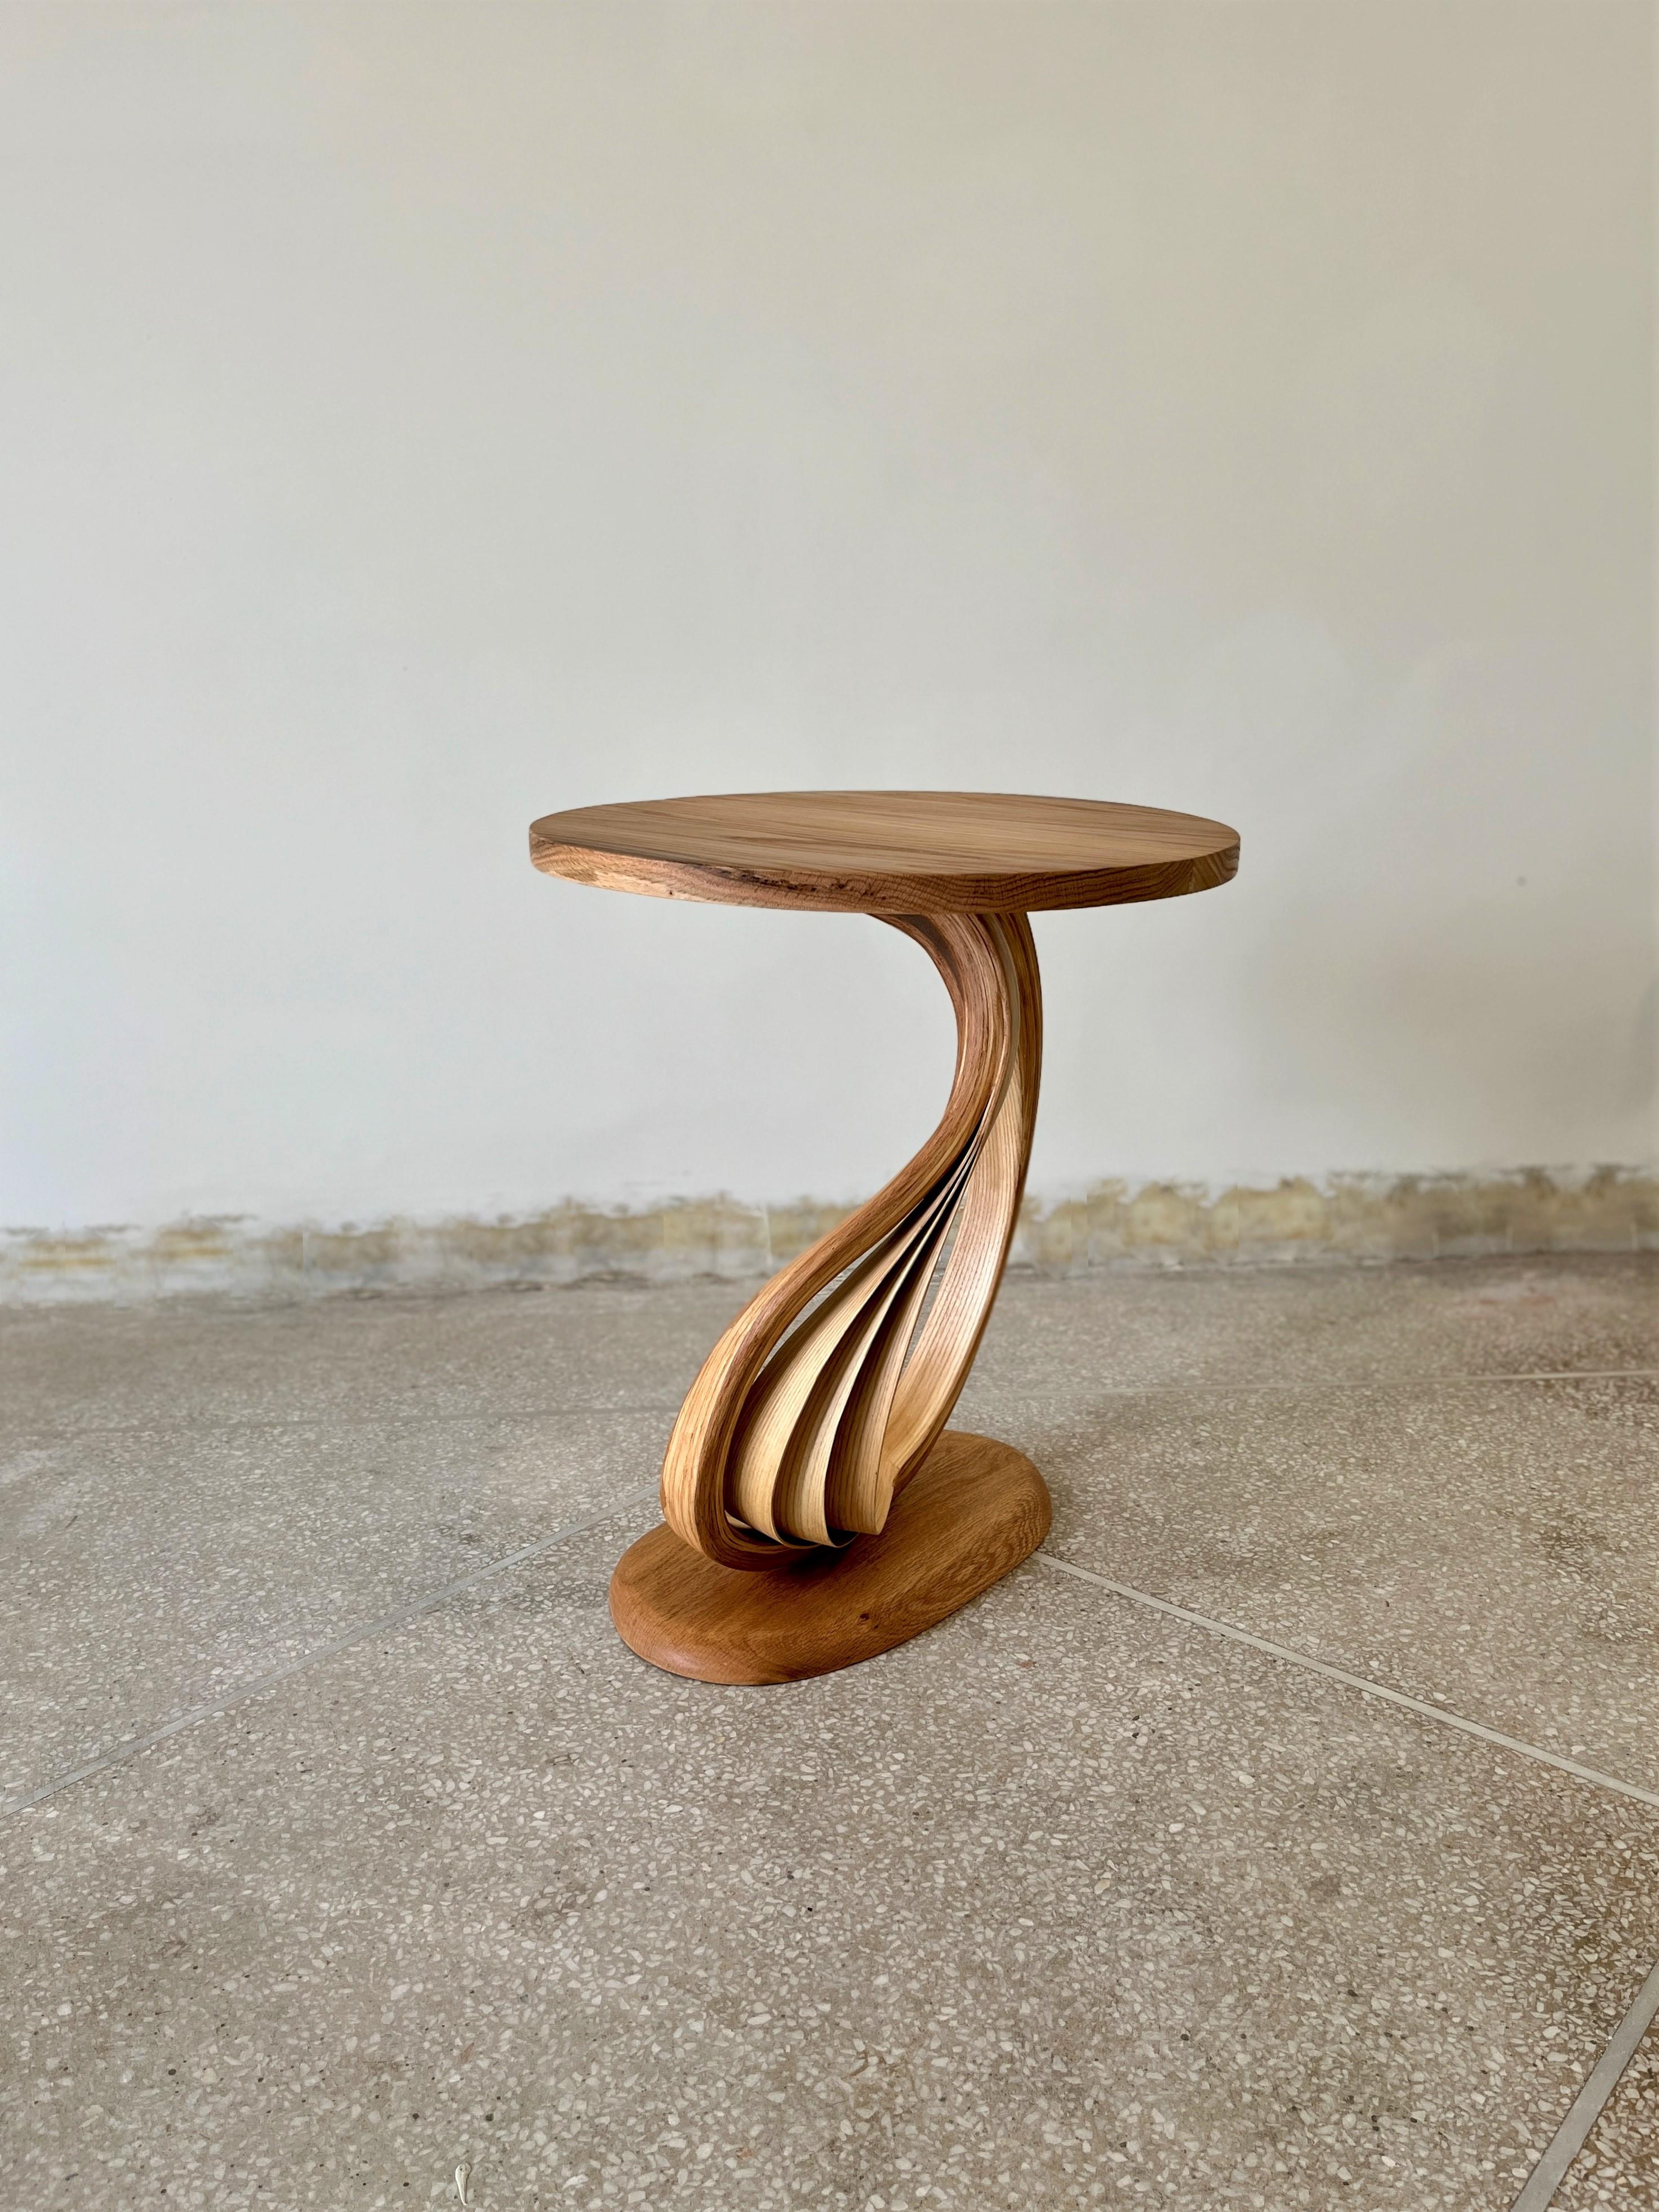 Pars Side Table ist ein Design aus gebogenem Holz von Raka Studio.

Das Hauptelement dieses Stücks ist die organische Bewegung des Bugholzes zwischen dem Kopf und dem Sockel. Die Proportionen des Oberteils und des Sockels sind so gewählt, dass sie